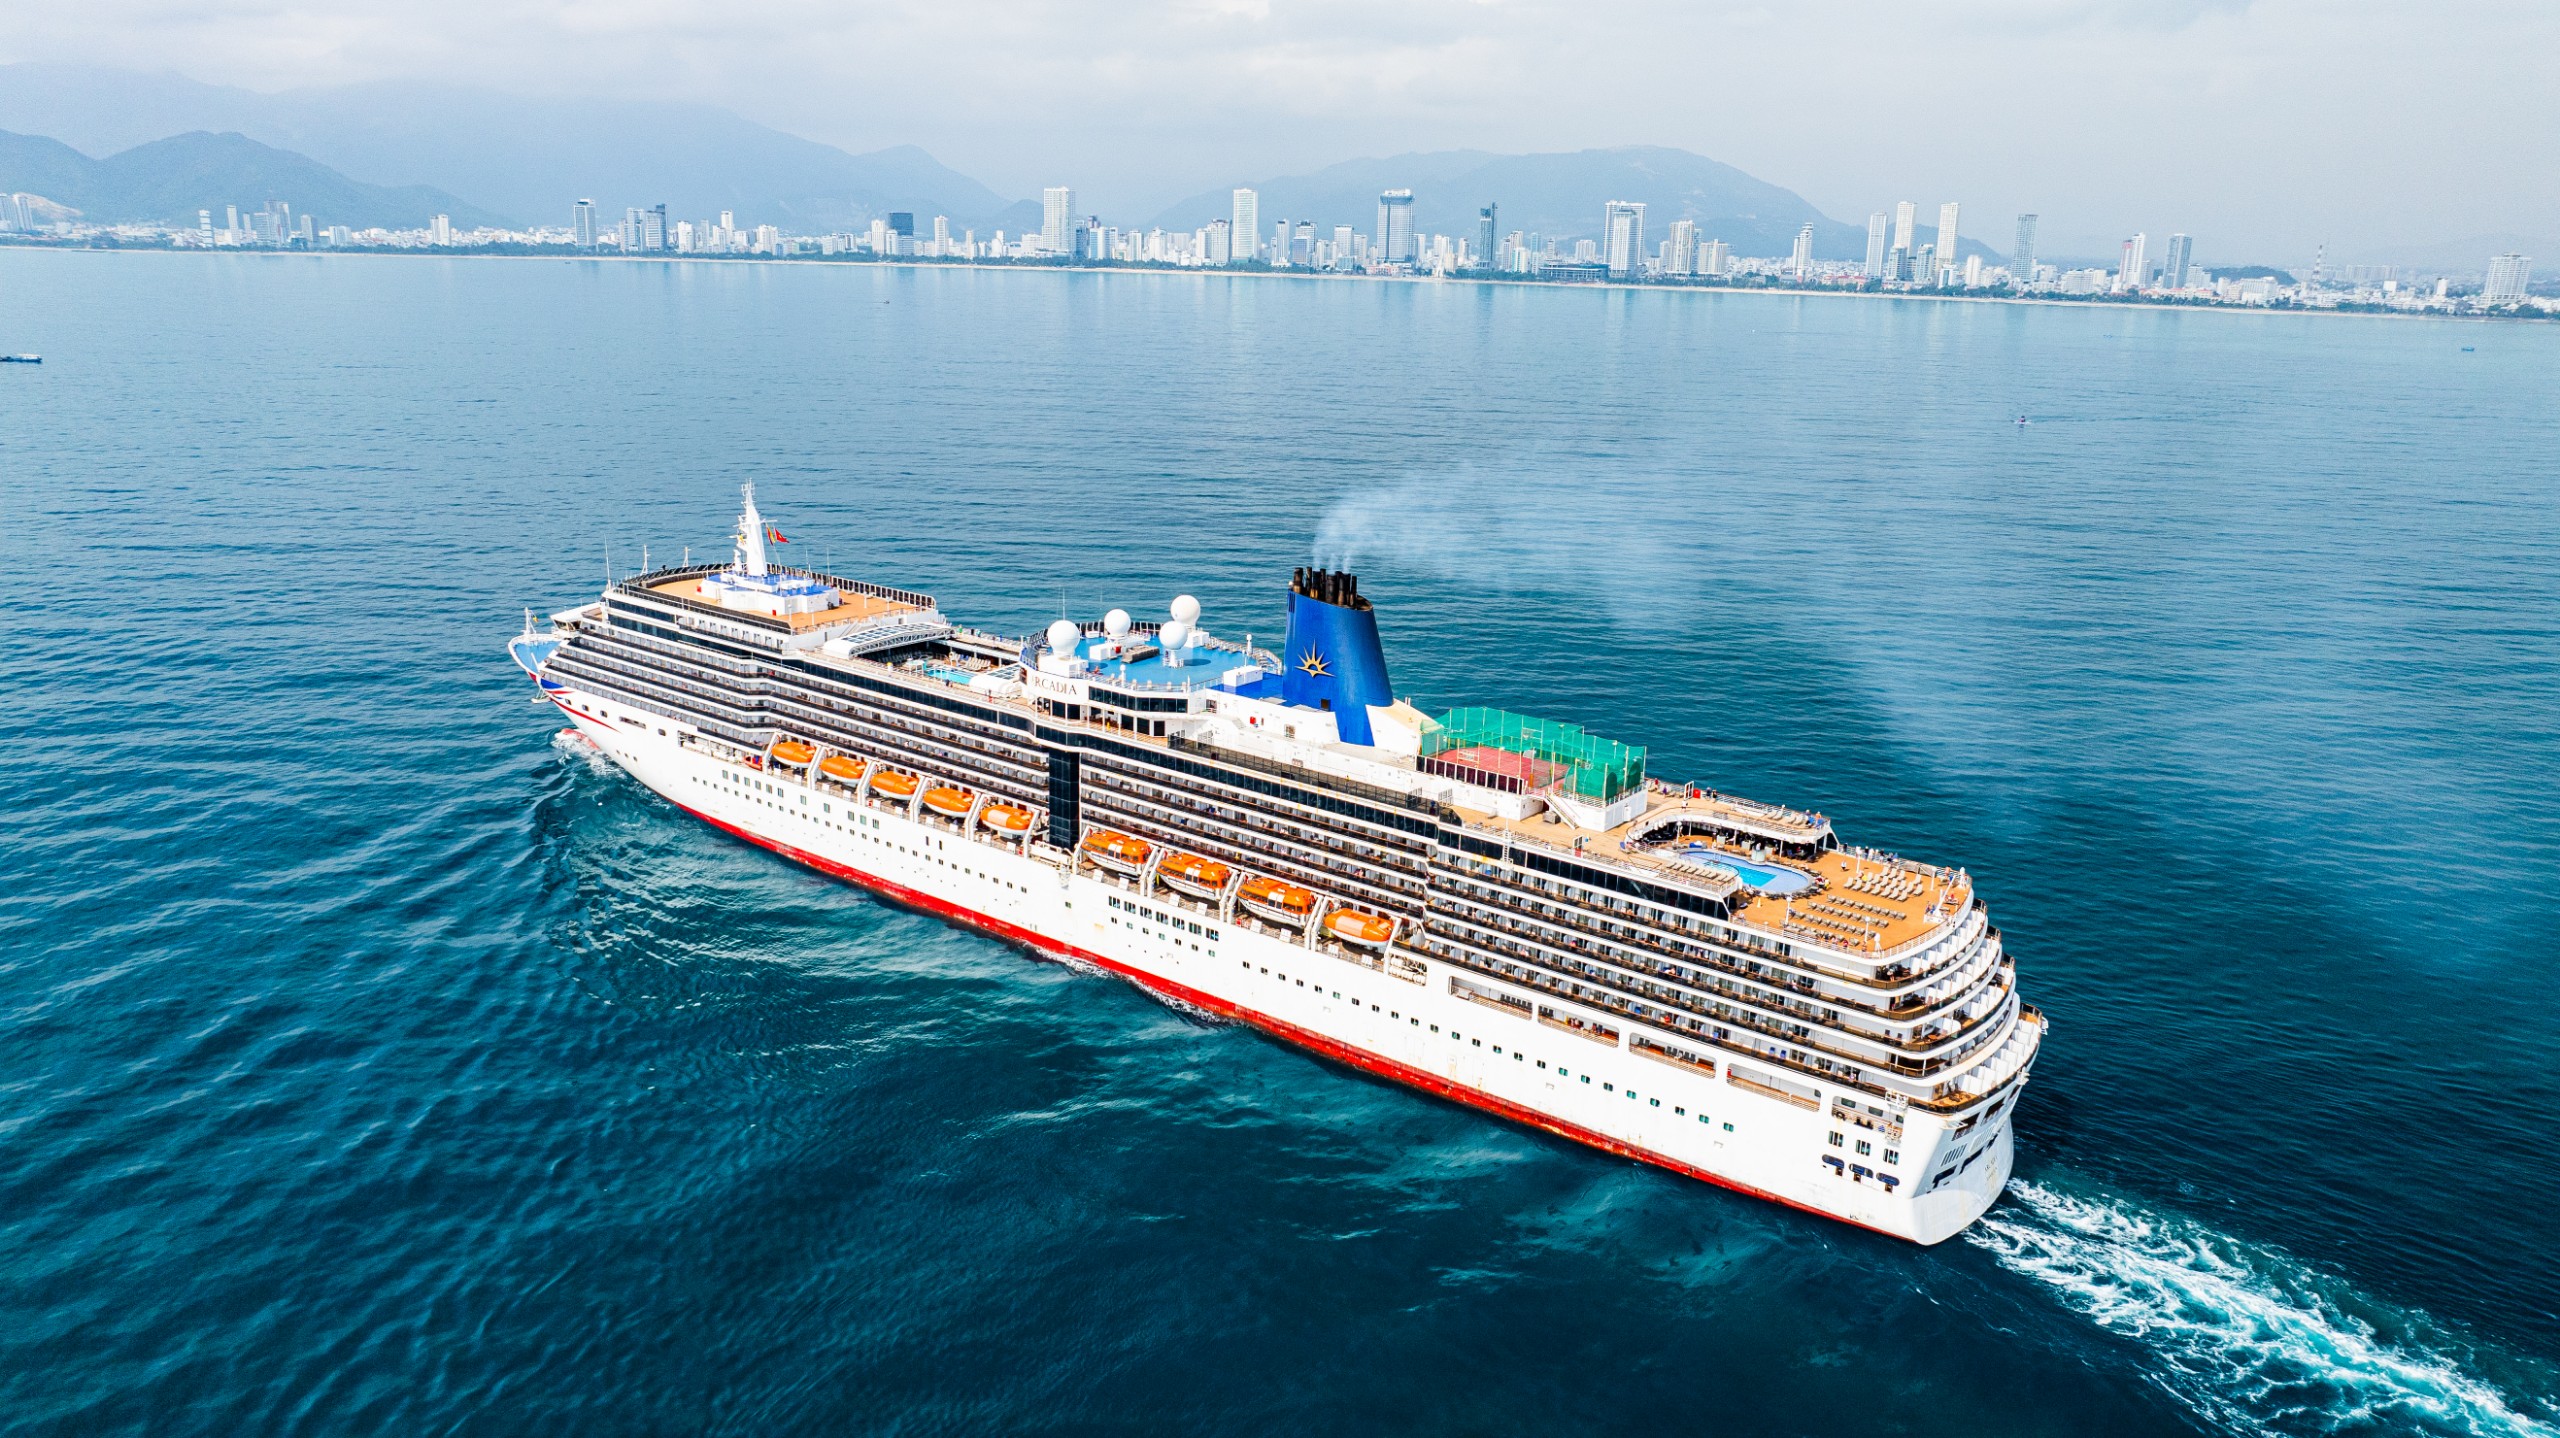 Arcadia cruise ship with 1,700 travelers calls at Nha Trang